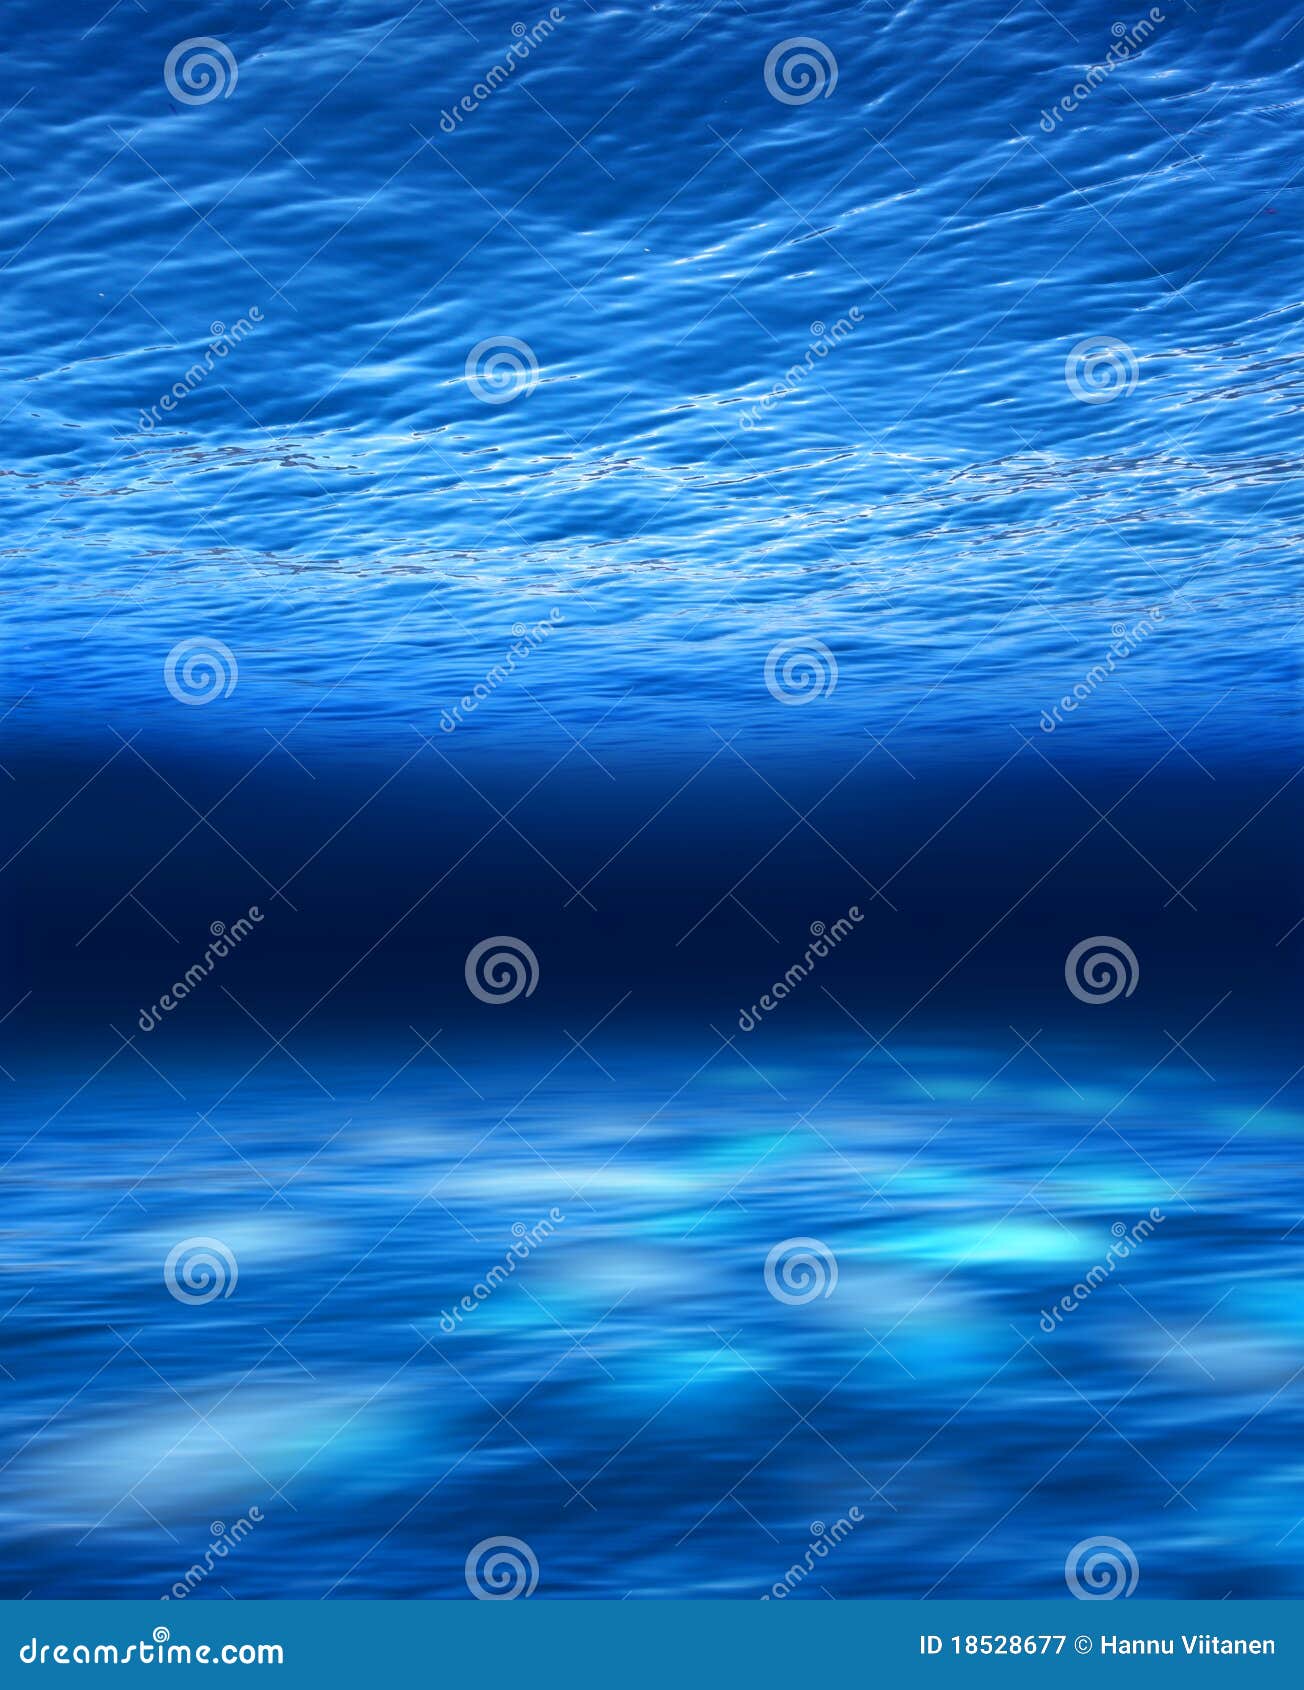 deep blue sea underwater